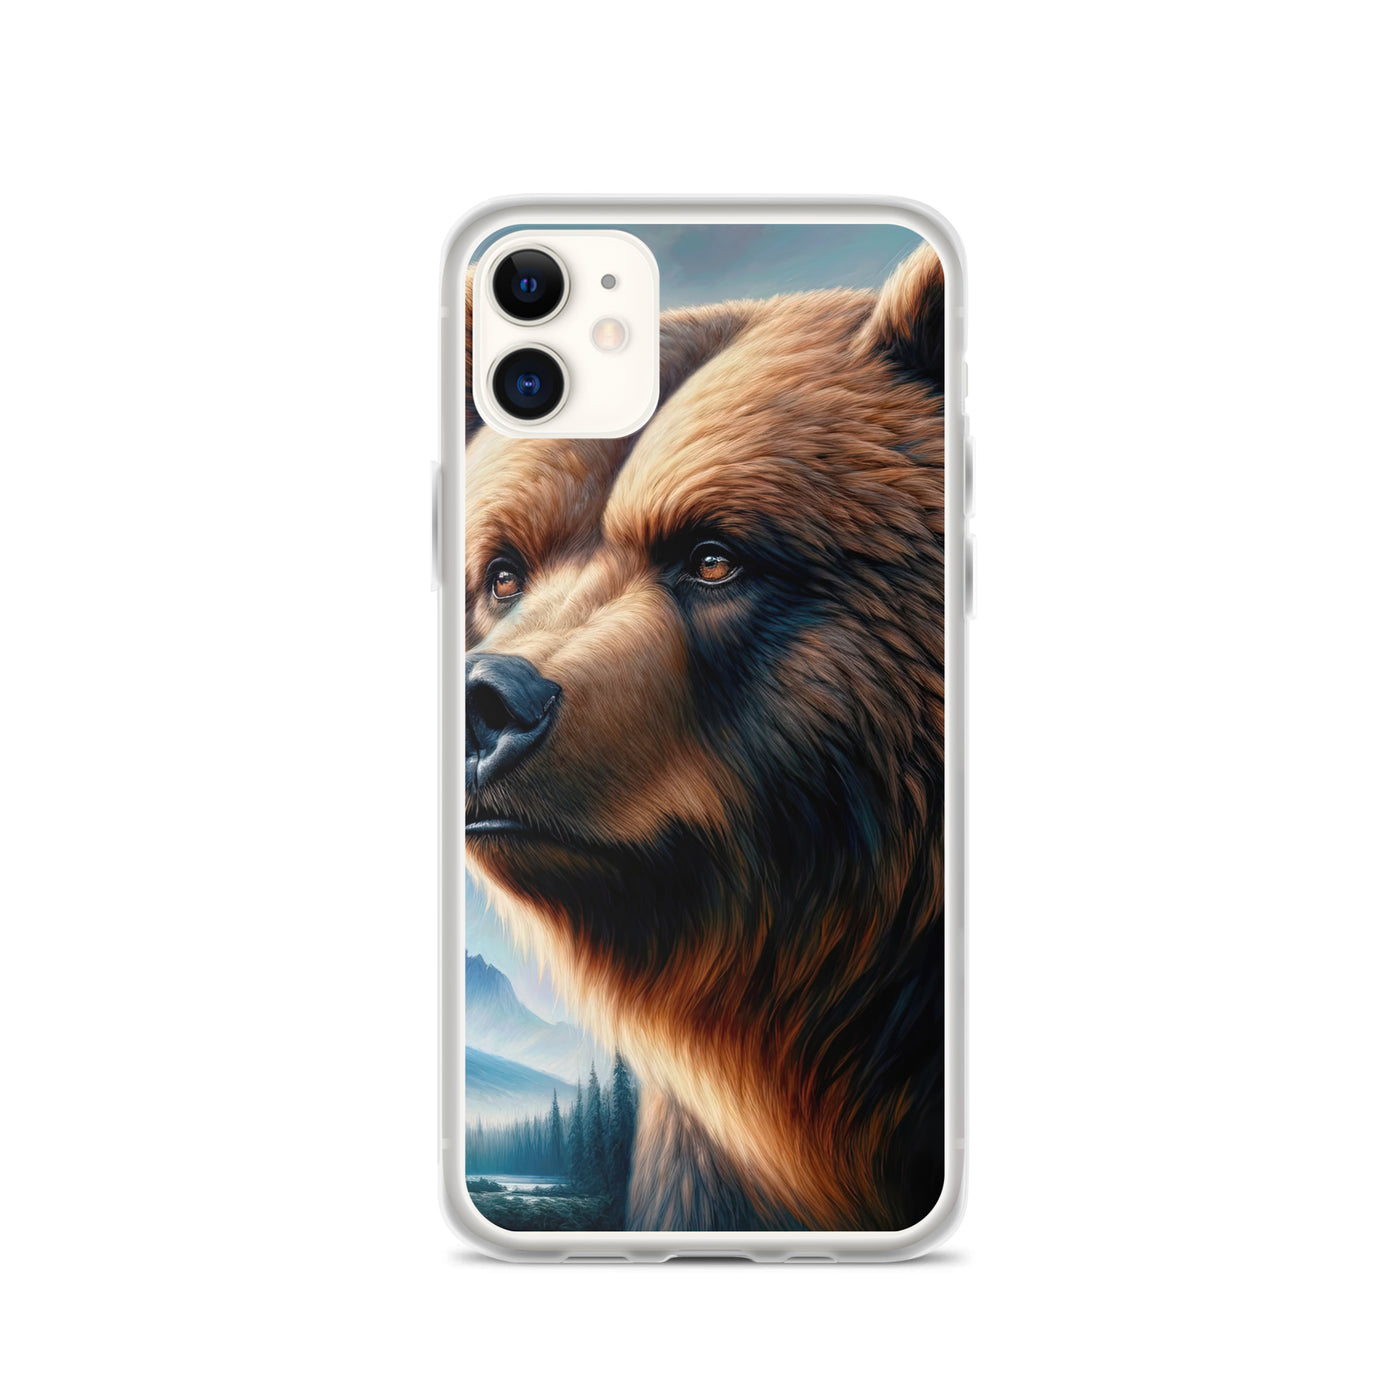 Ölgemälde, das das Gesicht eines starken realistischen Bären einfängt. Porträt - iPhone Schutzhülle (durchsichtig) camping xxx yyy zzz iPhone 11